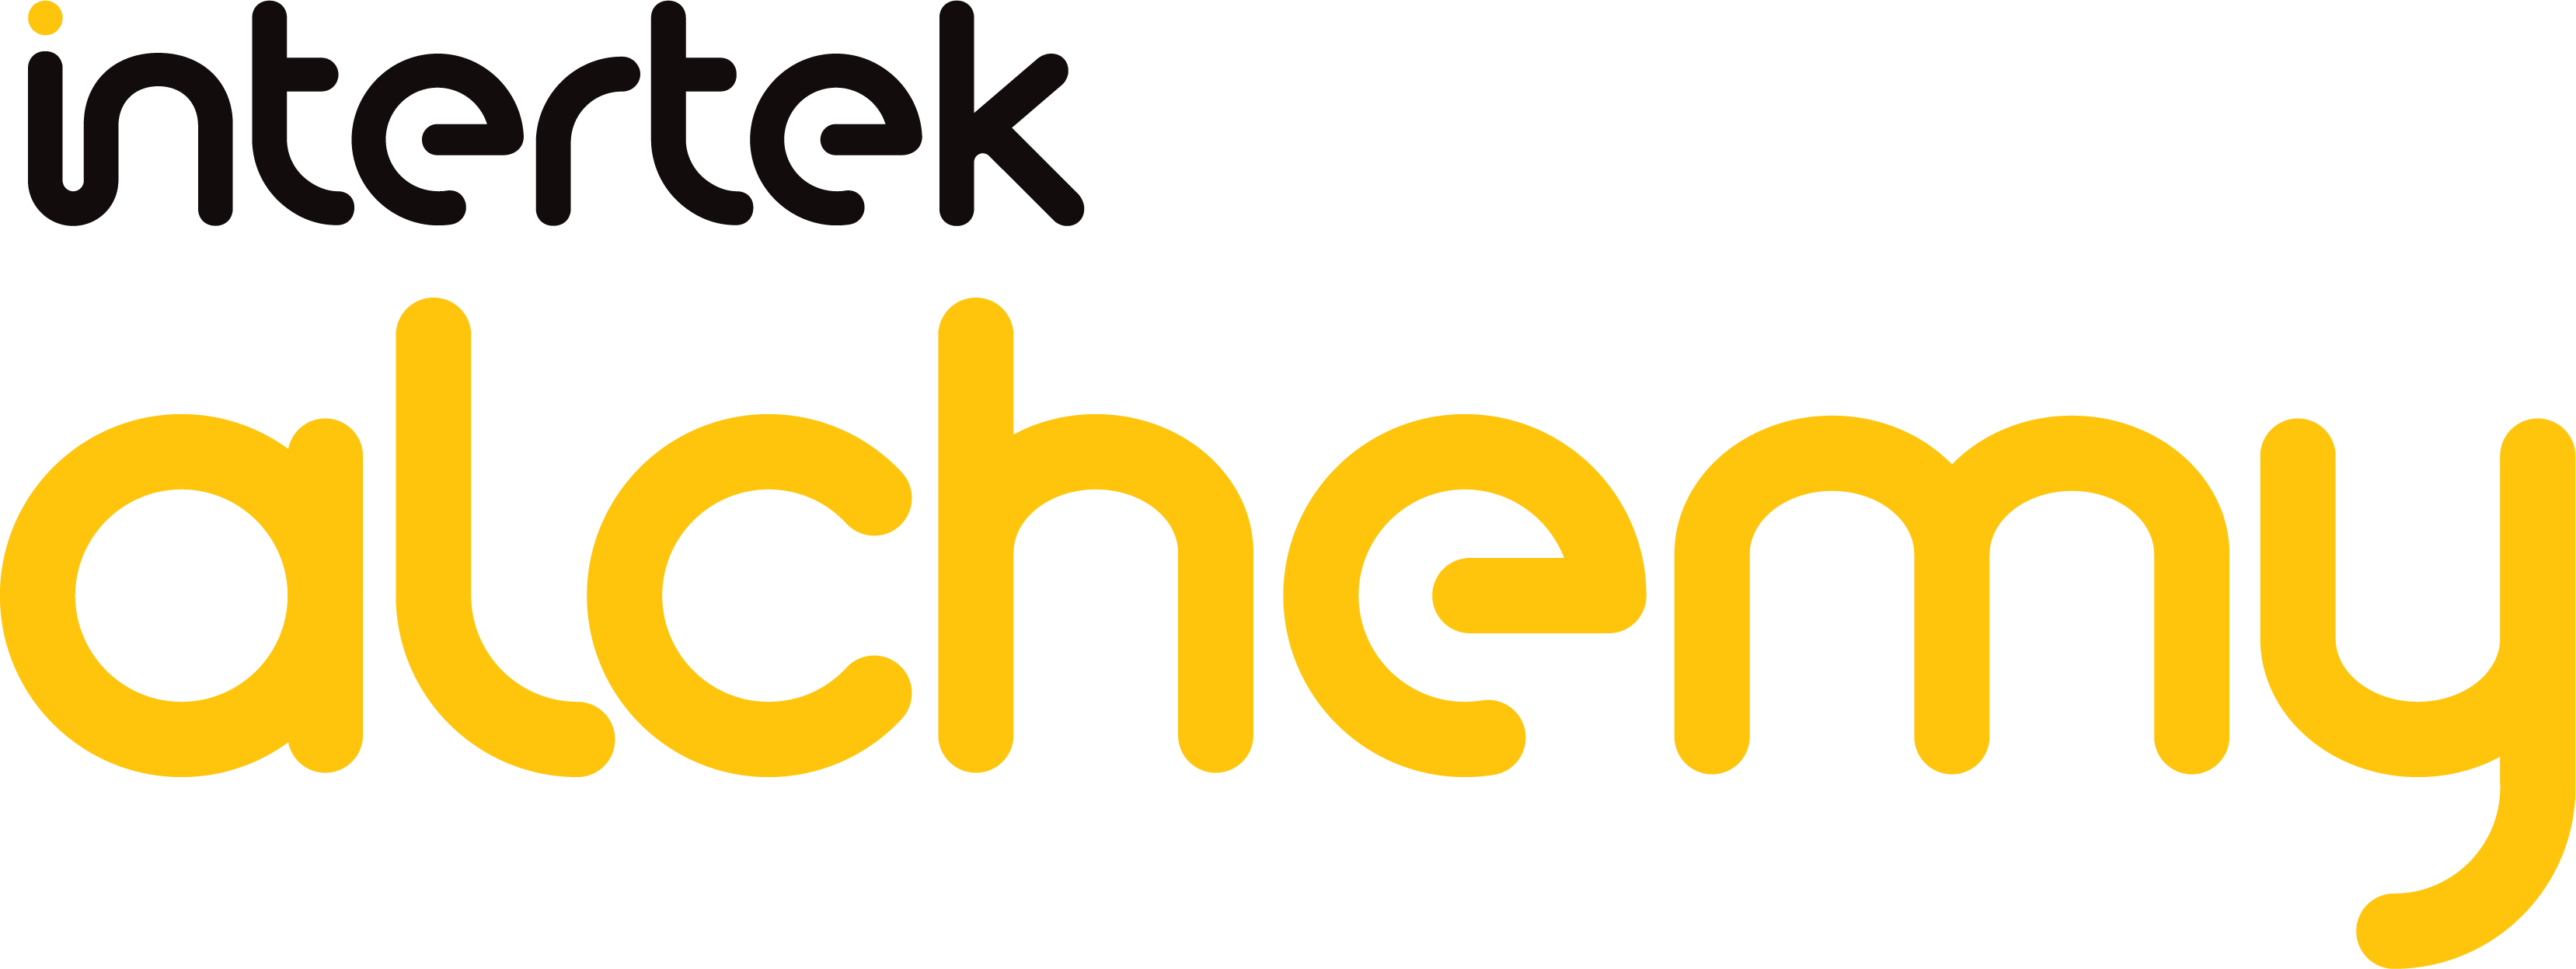 Intertek_Alchemy-logo-on-WHT_RGB.png